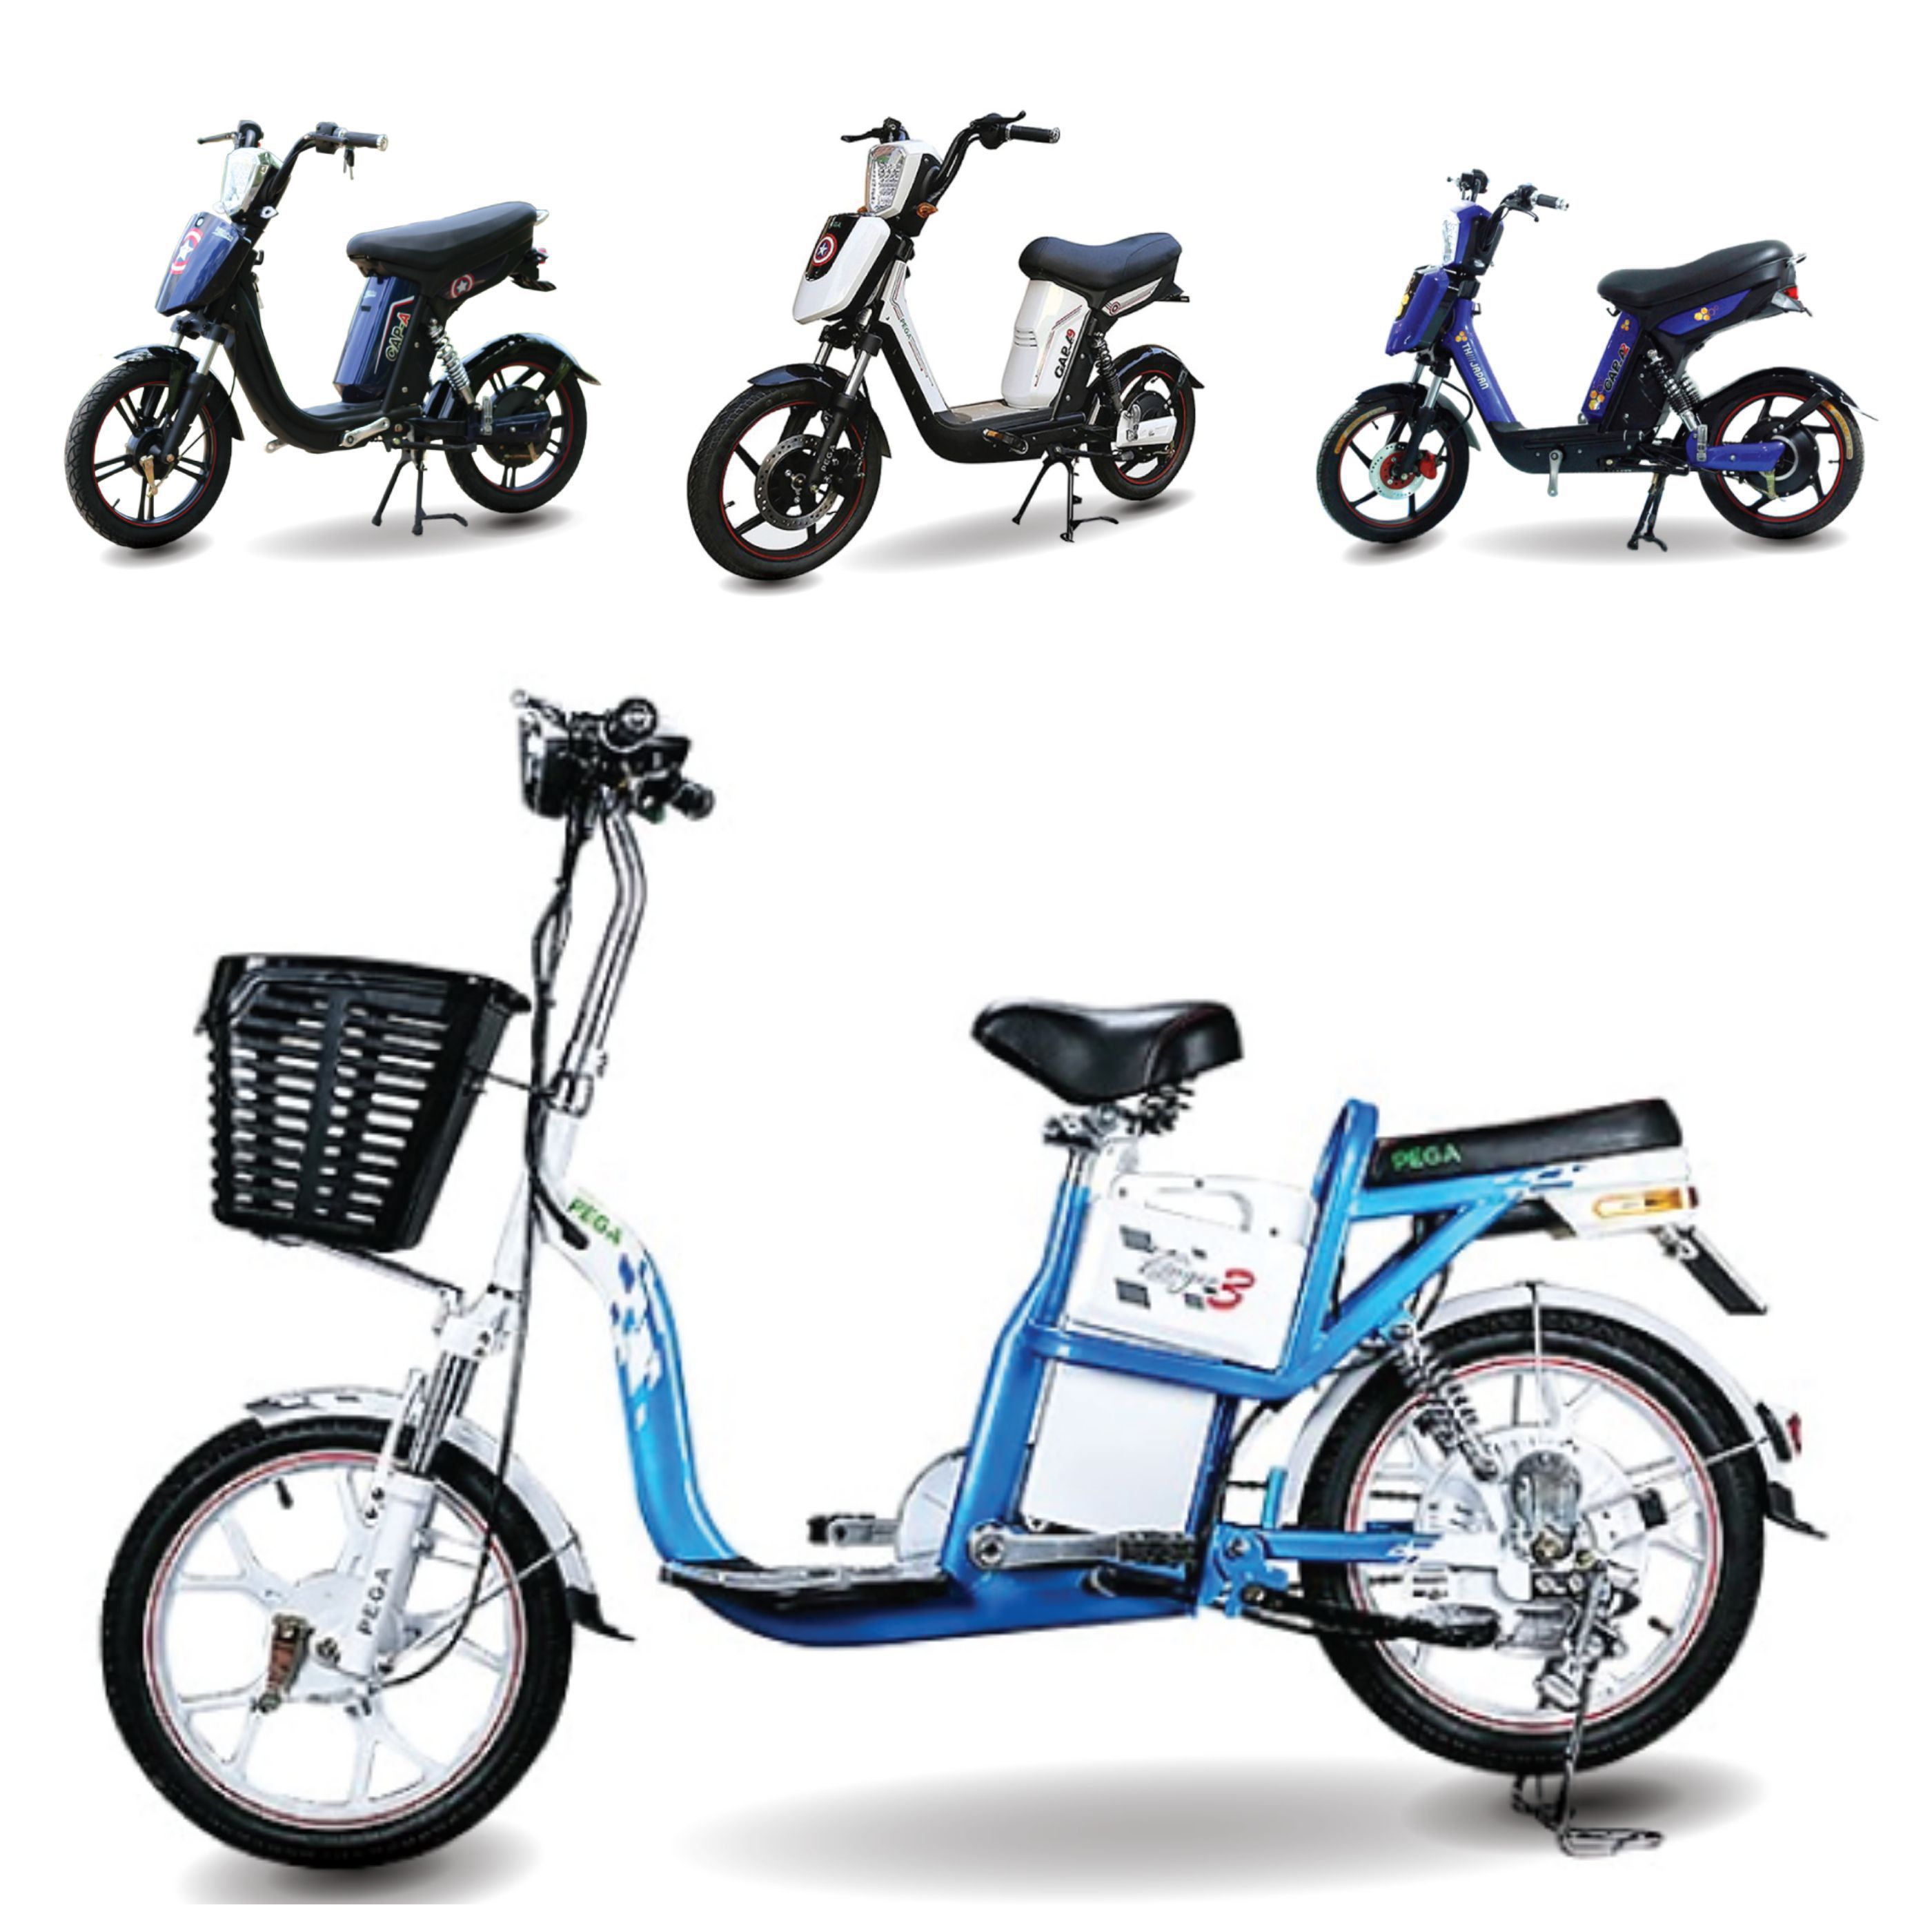 Xe đạp điện Pega cũ giá rẻ - chất lượng có dễ tìm mua?